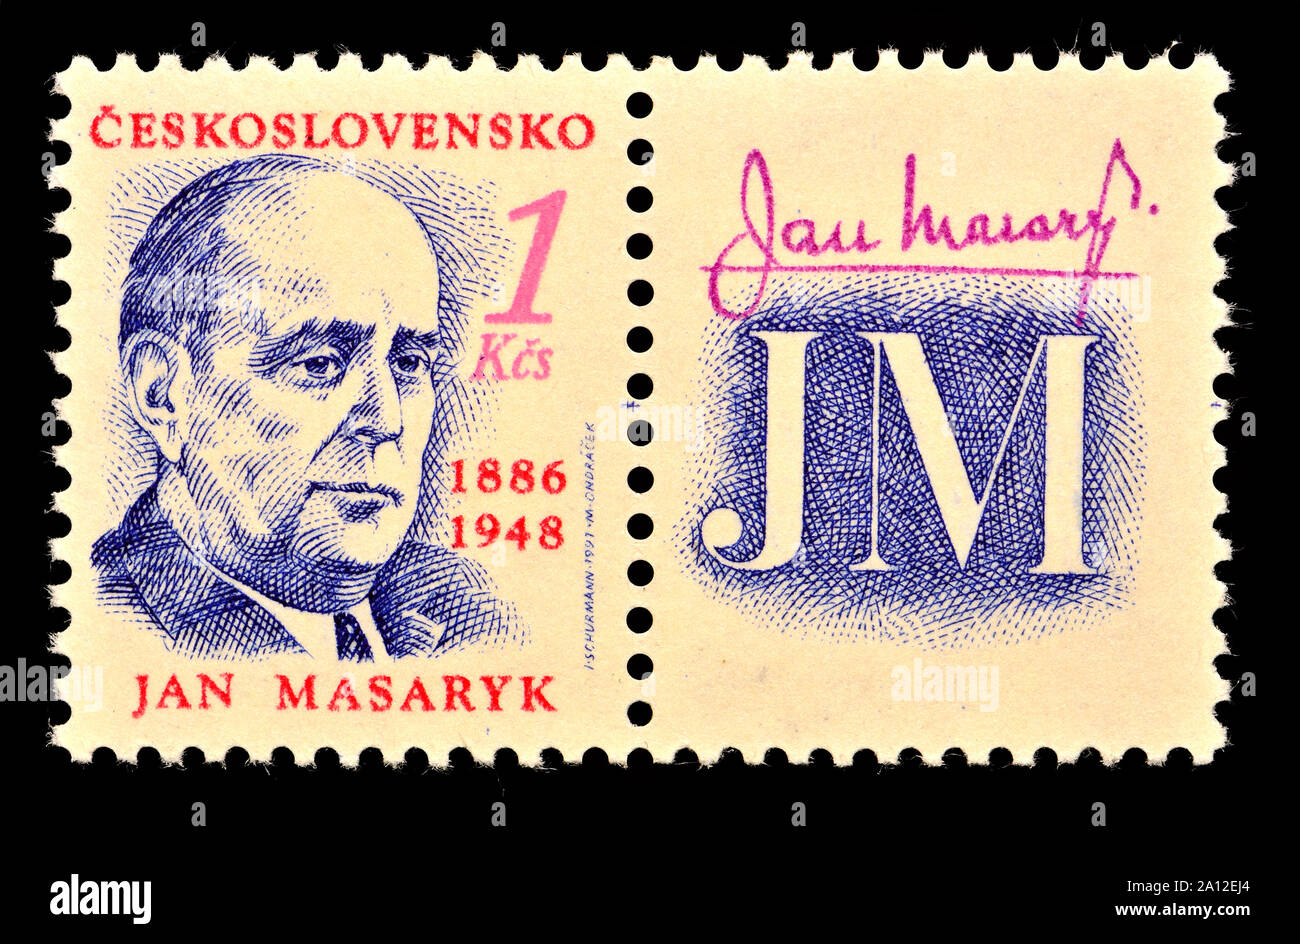 Tschechoslowakische Briefmarke (1991): Jan Masaryk (1886-1948), Politiker und Diplomat Stockfoto